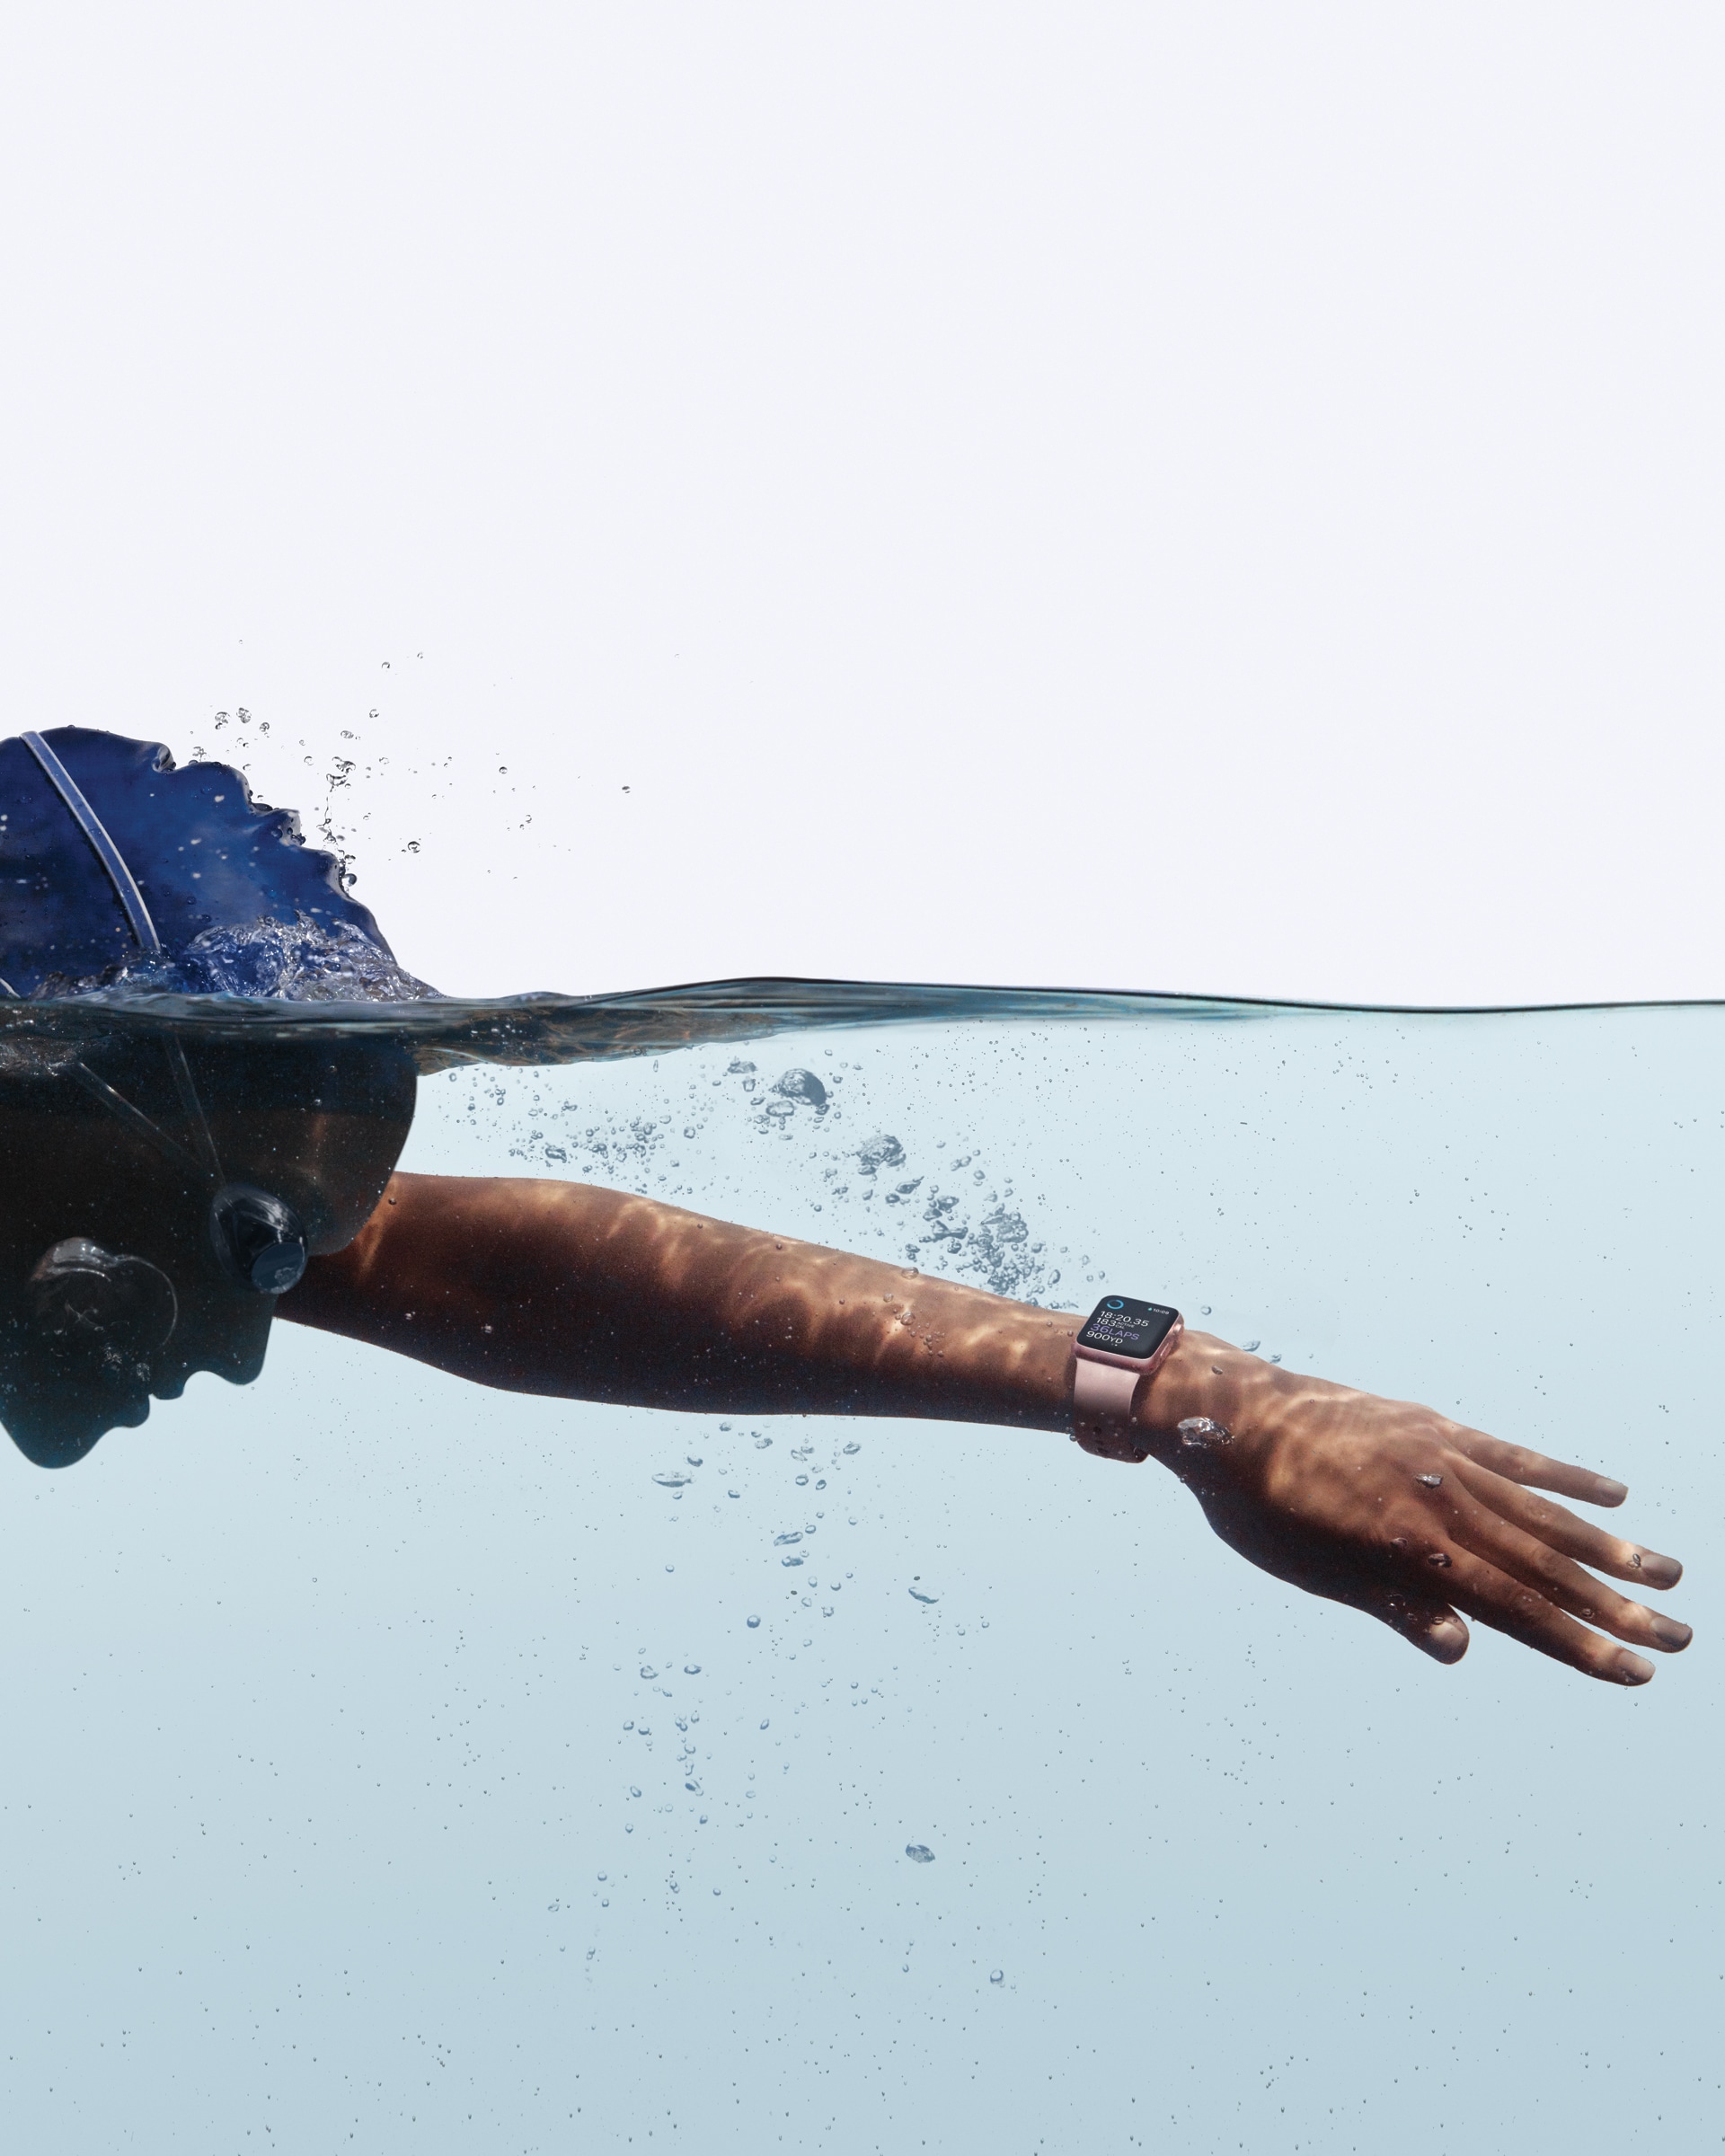 Apple Watch Series 2 sendo usado para natação (na água)